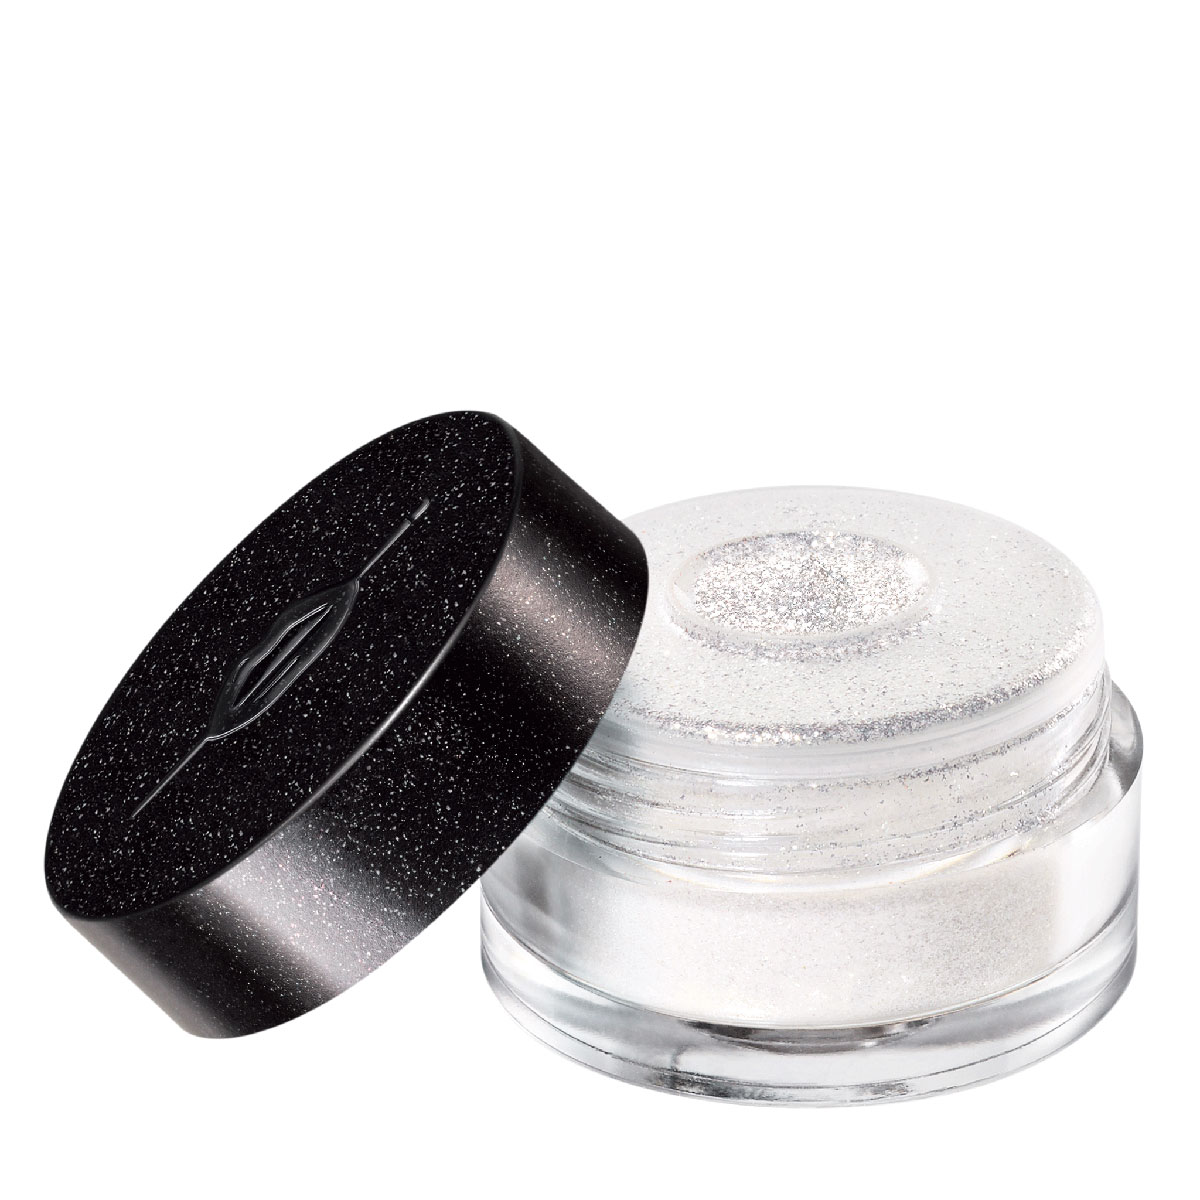 Make Up For Ever Star Lit Diamond Powder 101 White 2.5G